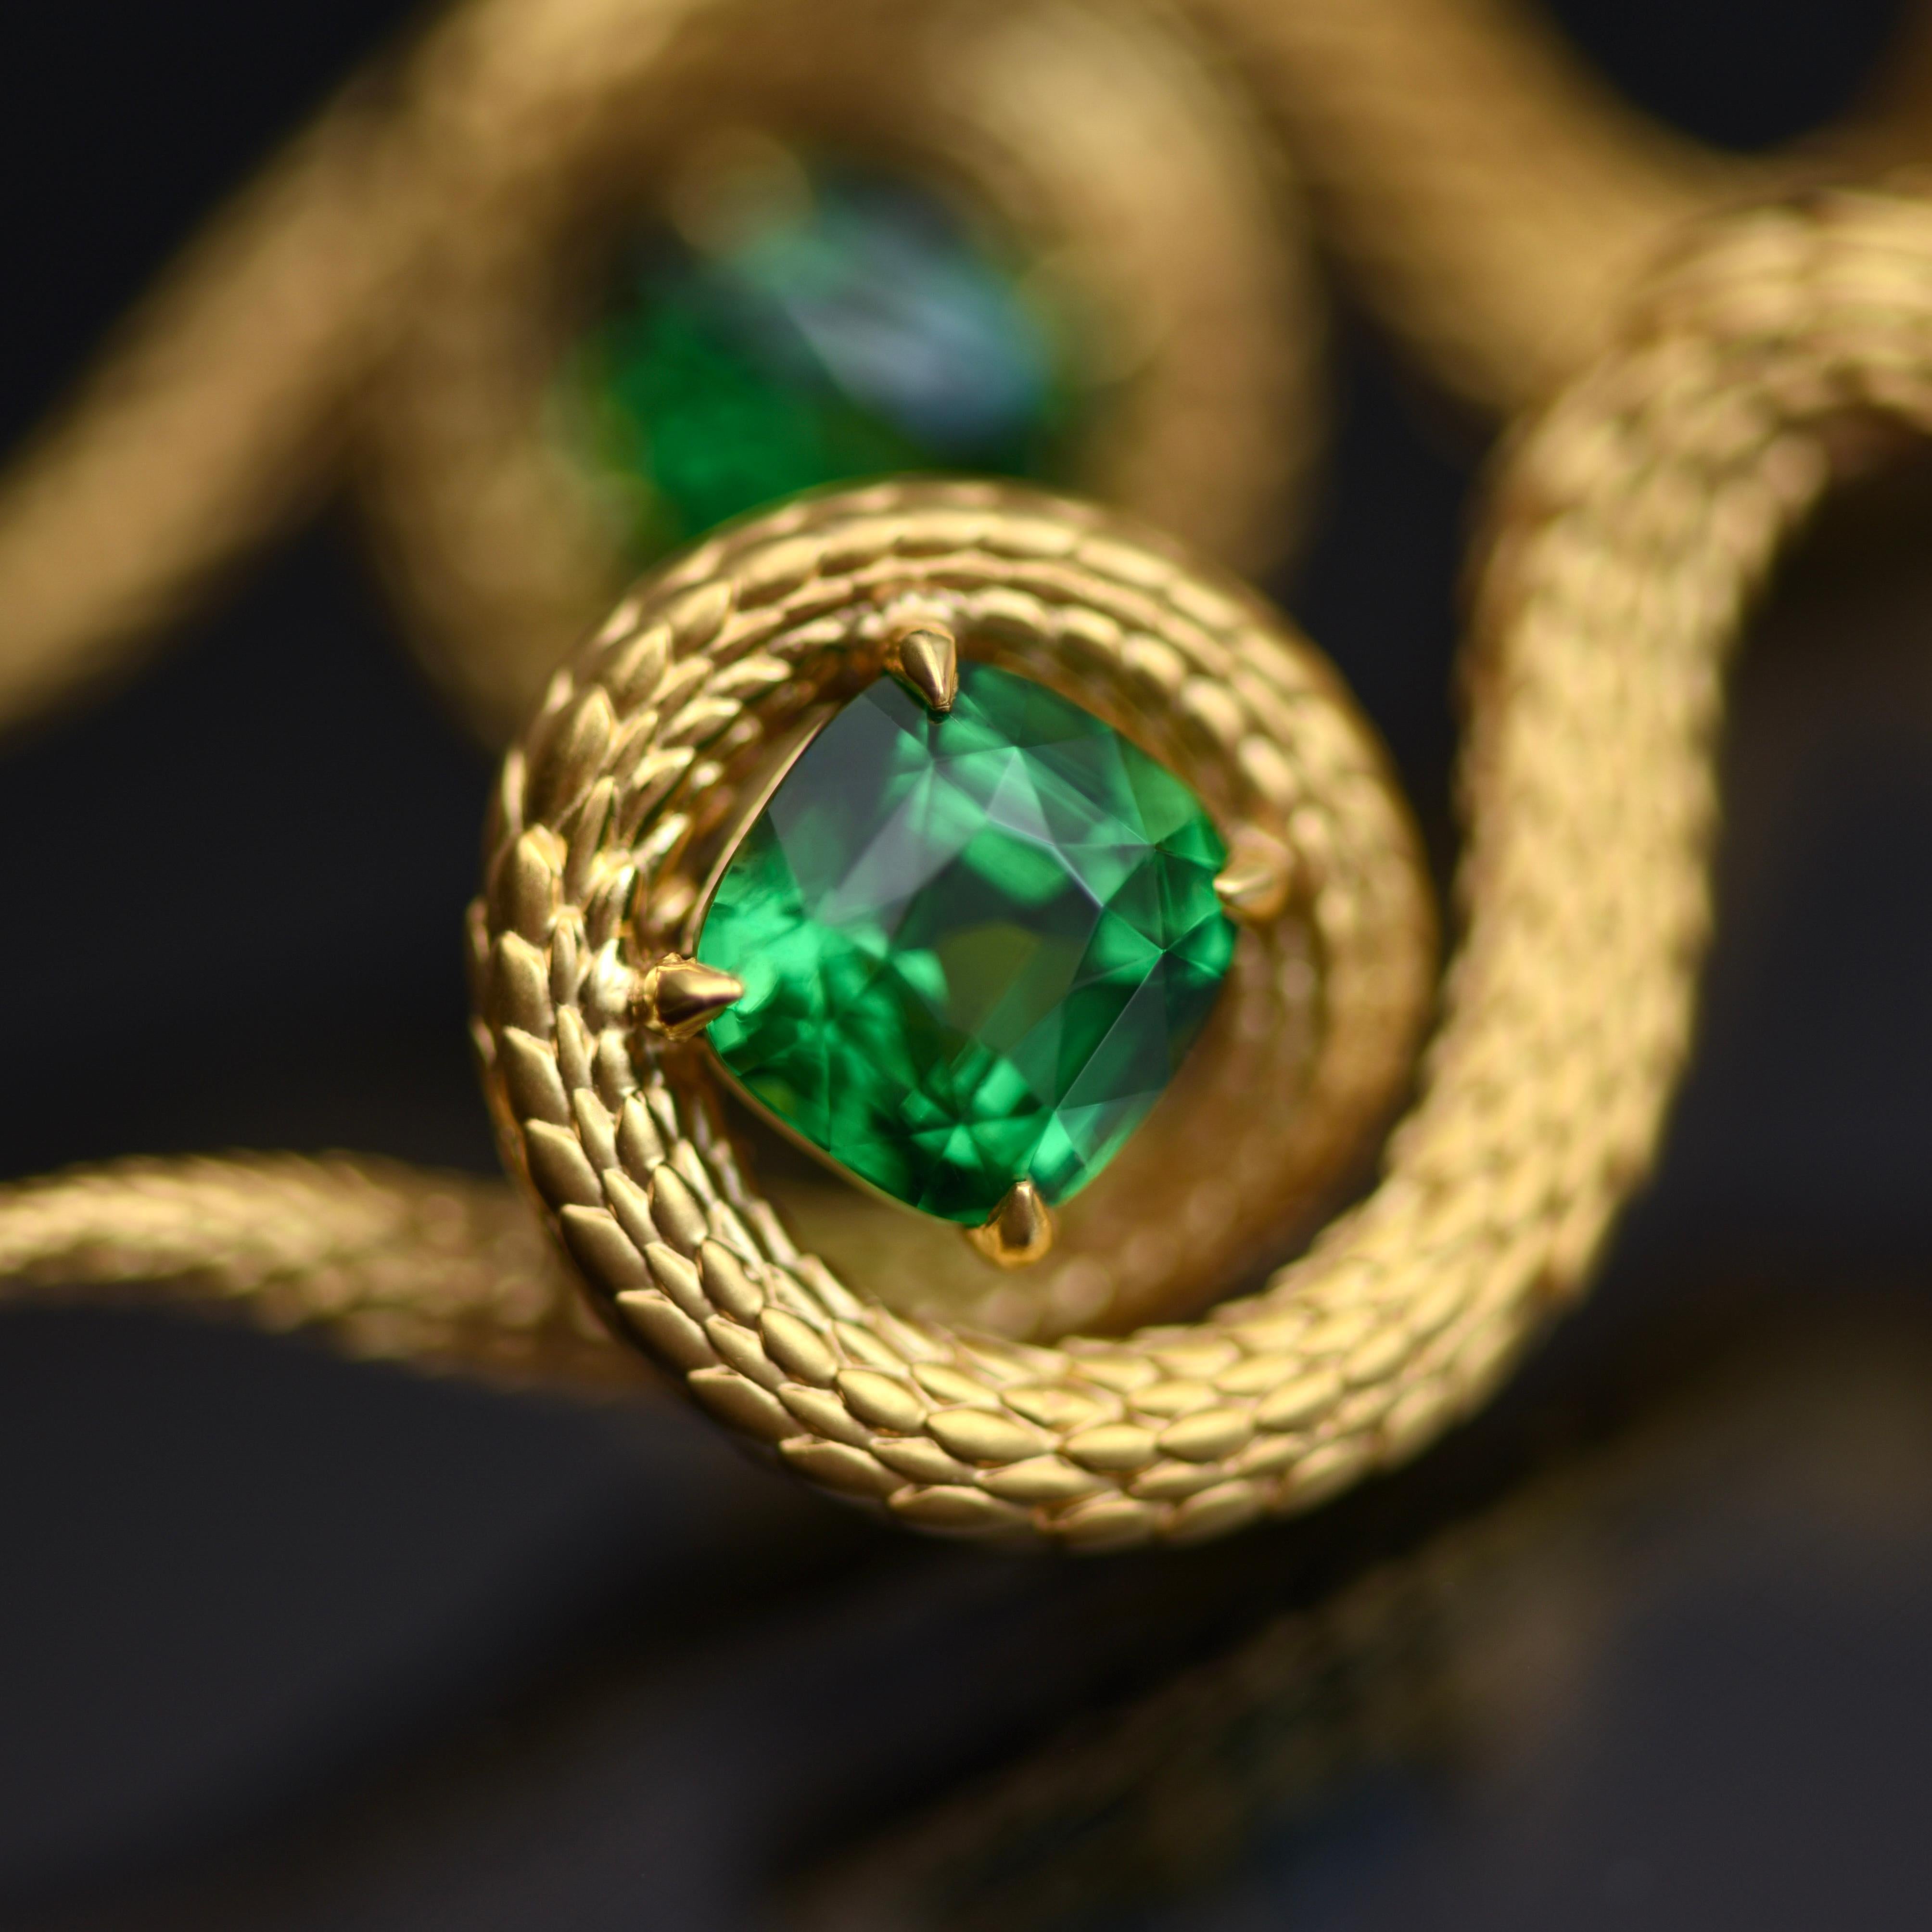 Egyptian Revival 5, 34 Carat Vivid Green Tsavorite 18 Karat Yellow Golden Serpent Earrings by D&A